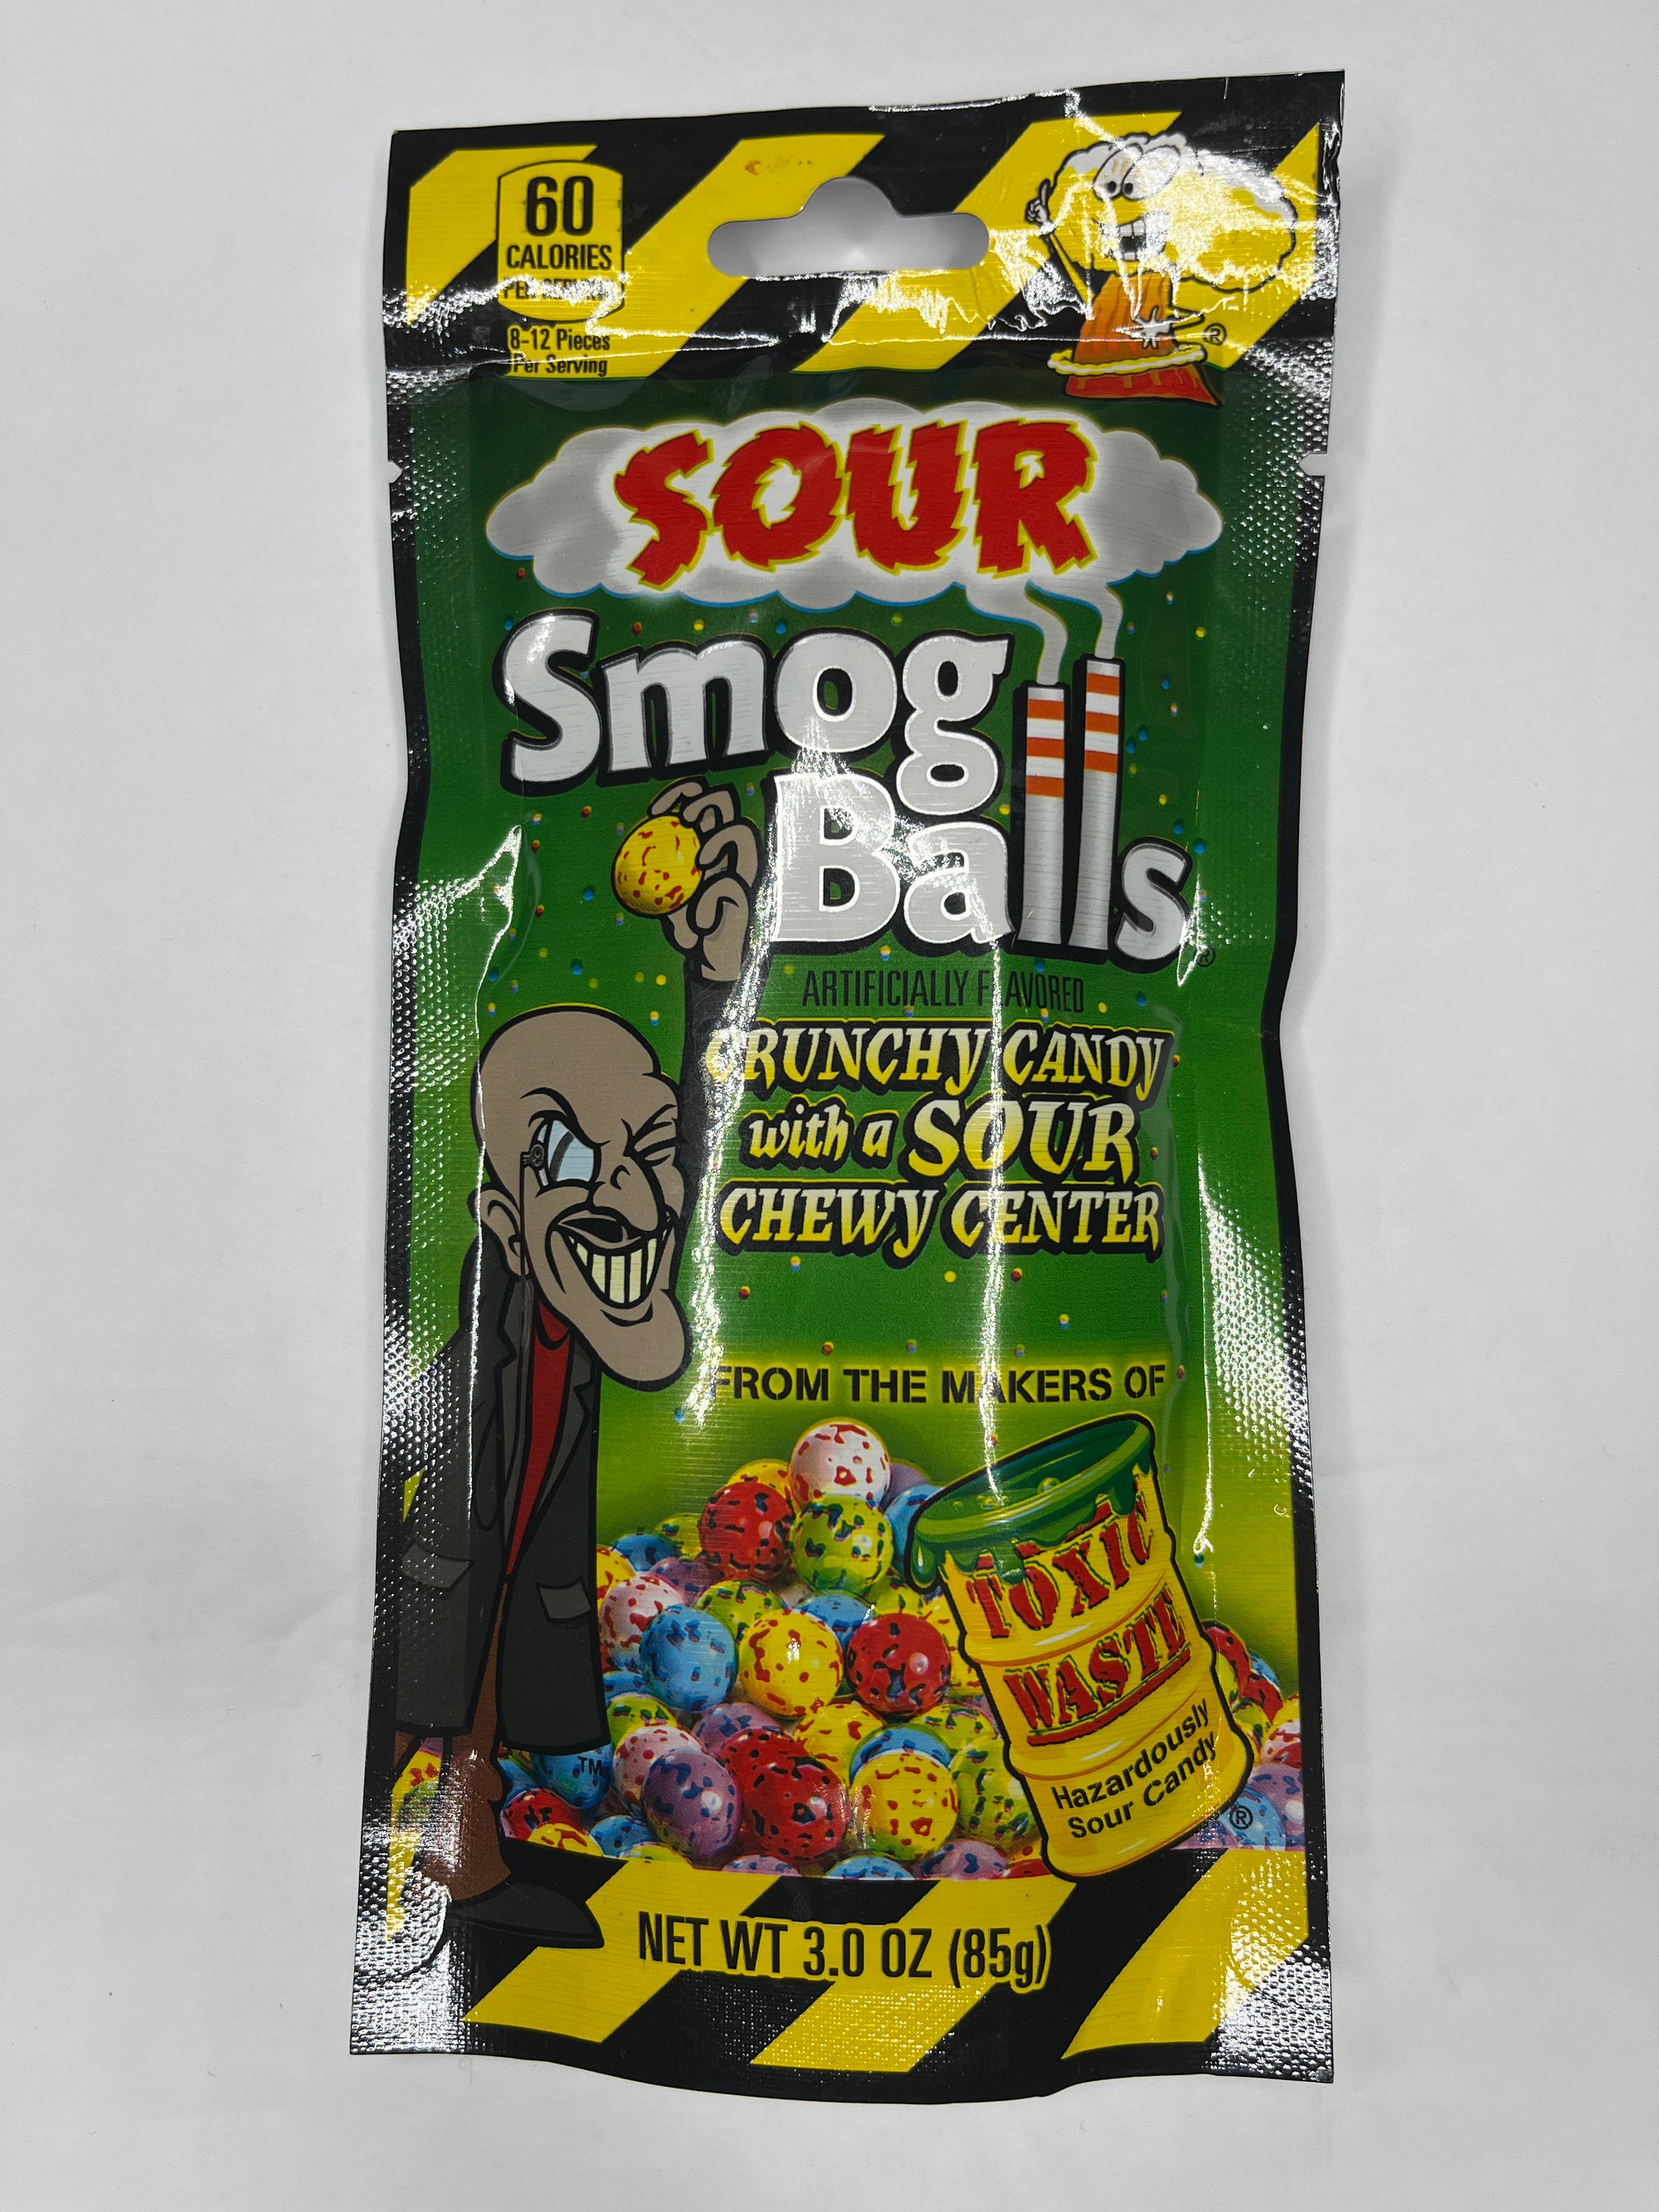 Toxic Waste Sour Smog Balls